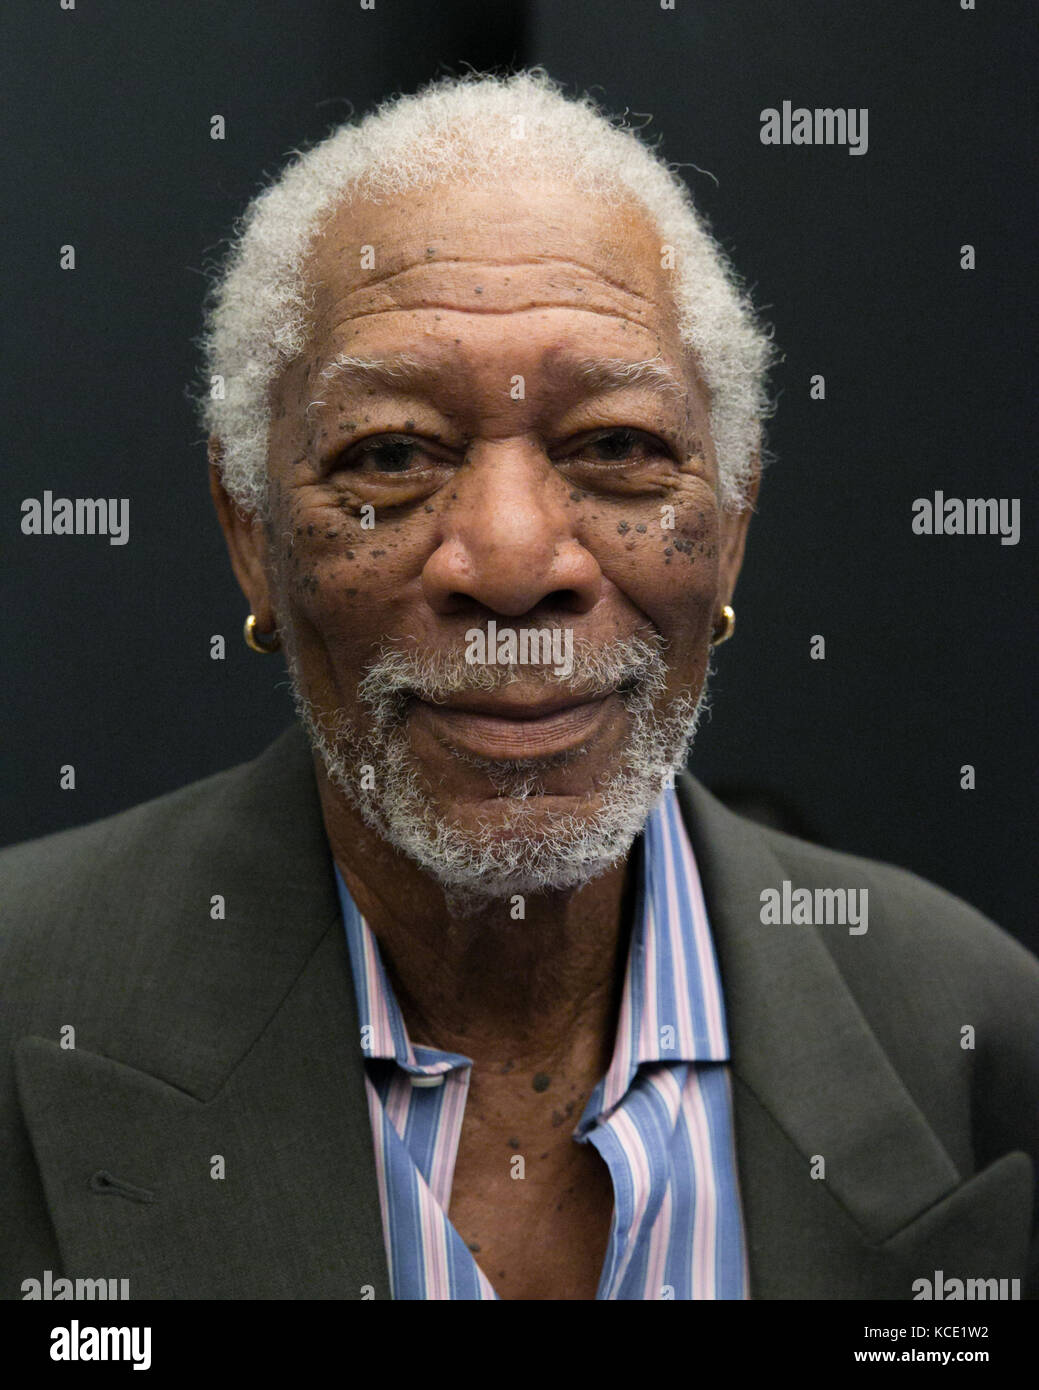 New York, New York 28.09.2017. Morgan Freeman exklusive Portrait an der Paley Center darstellen. sppider/alamy Stockfoto